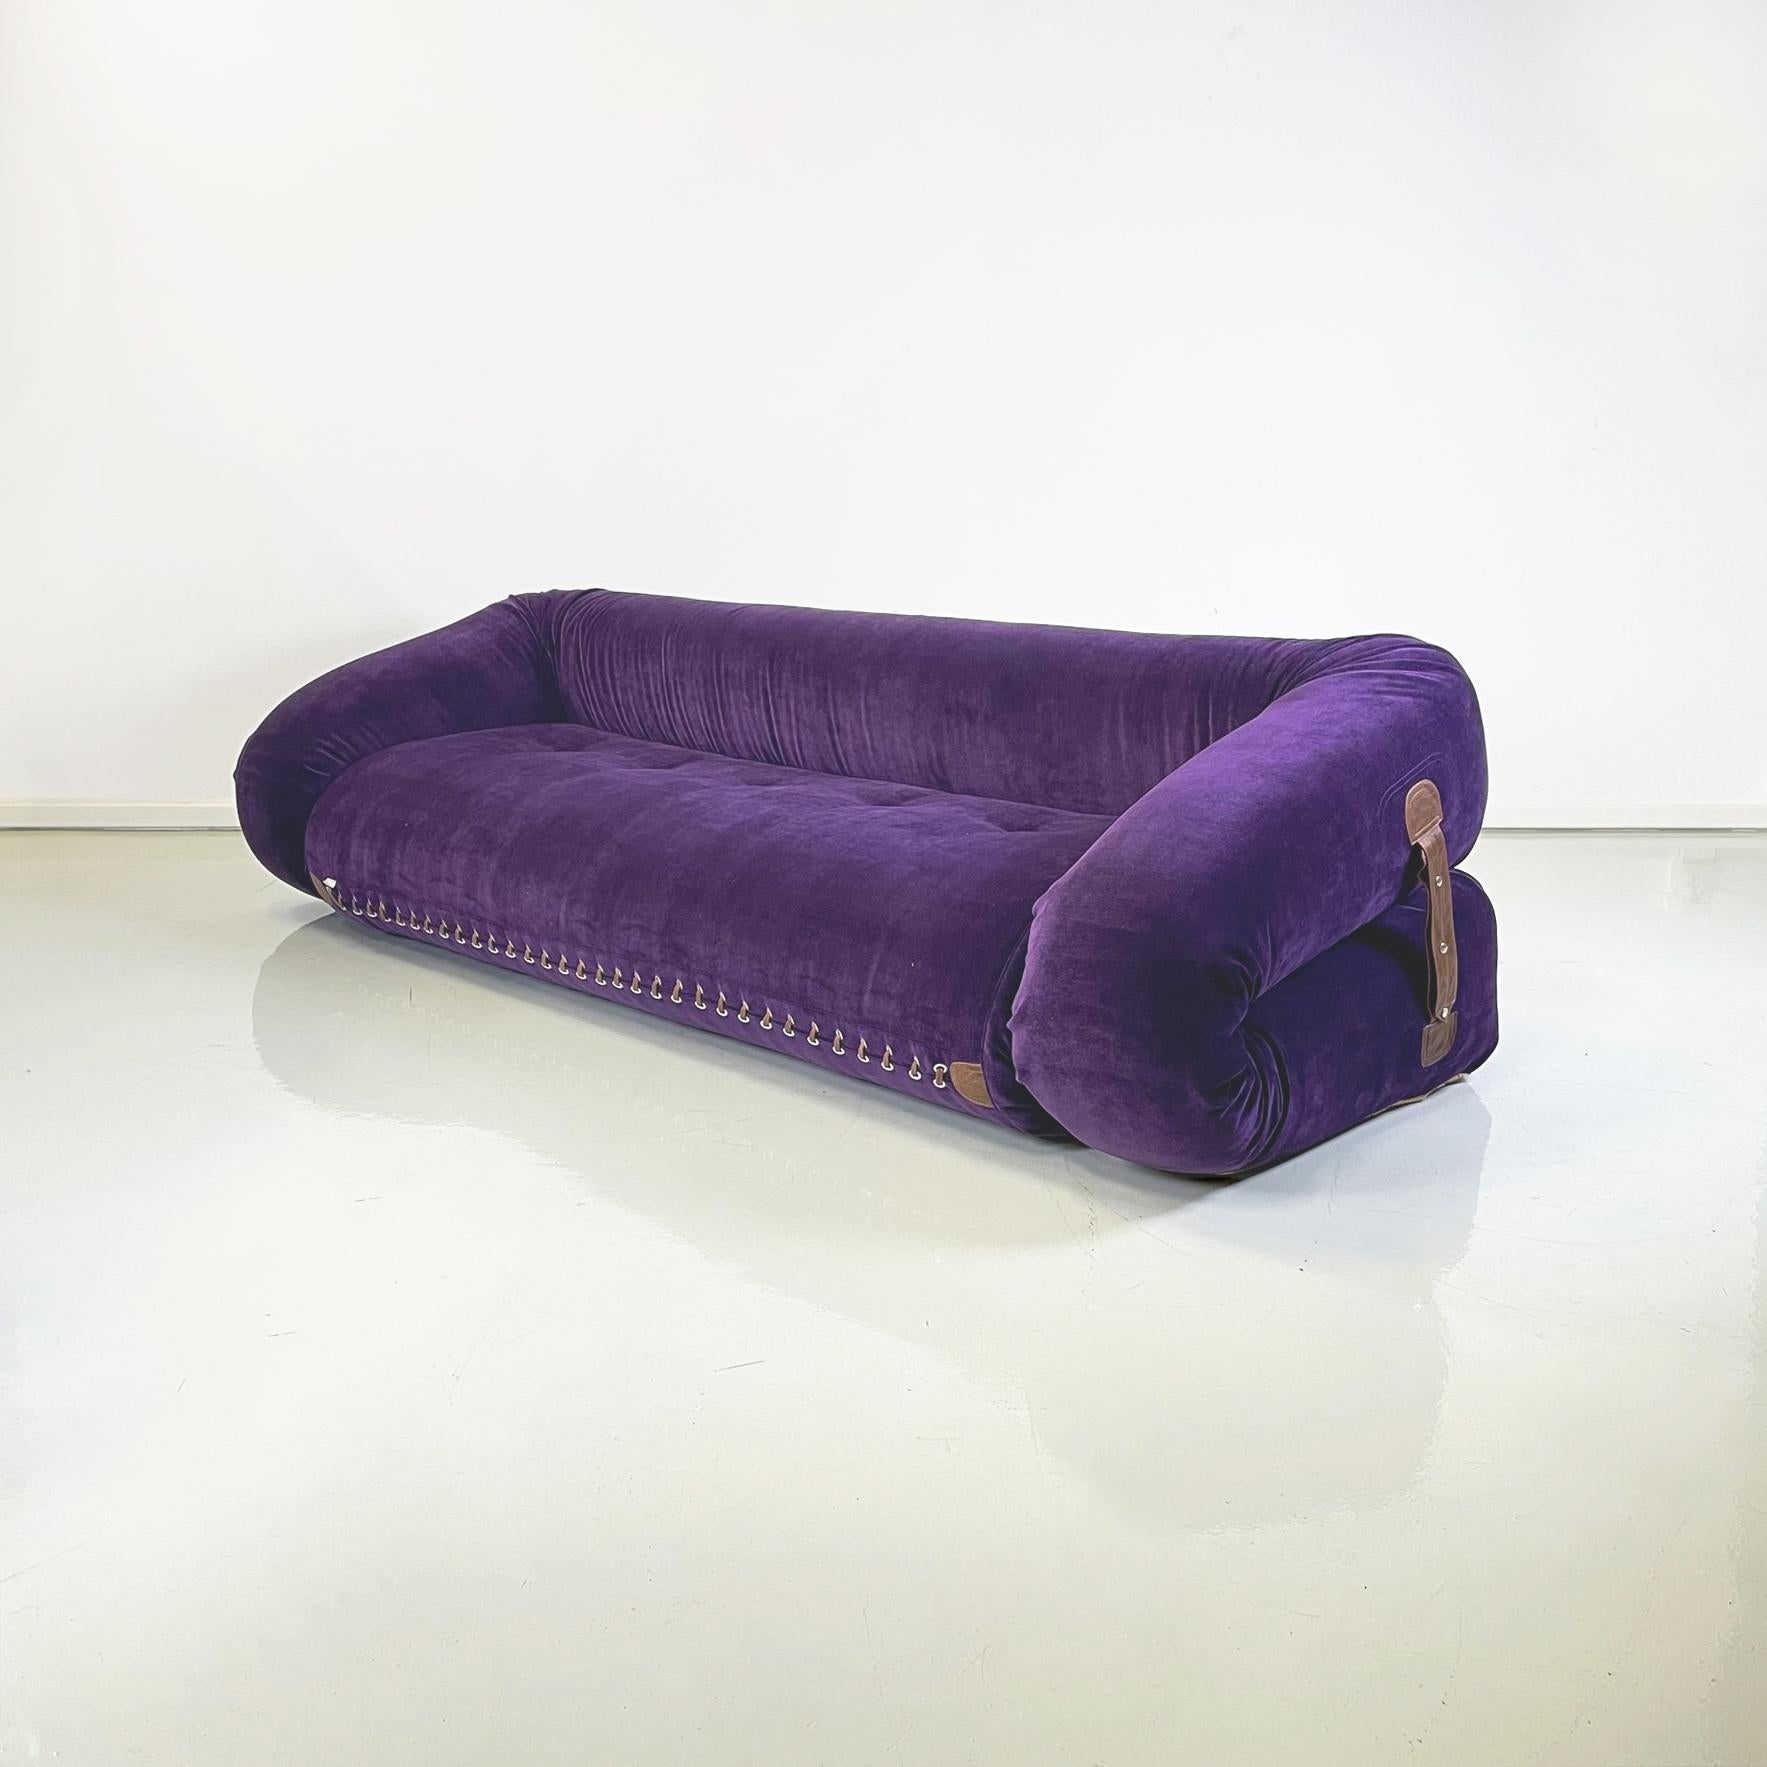 Canapé-lit moderne italien en velours violet mod. Anfibio par Alessandro Becchi pour Giovannetti, 1970
Canapé-lit mod. Anfibio en velours violet aubergine. Le canapé a une assise rectangulaire avec des boutons en métal. Sur les côtés se trouvent